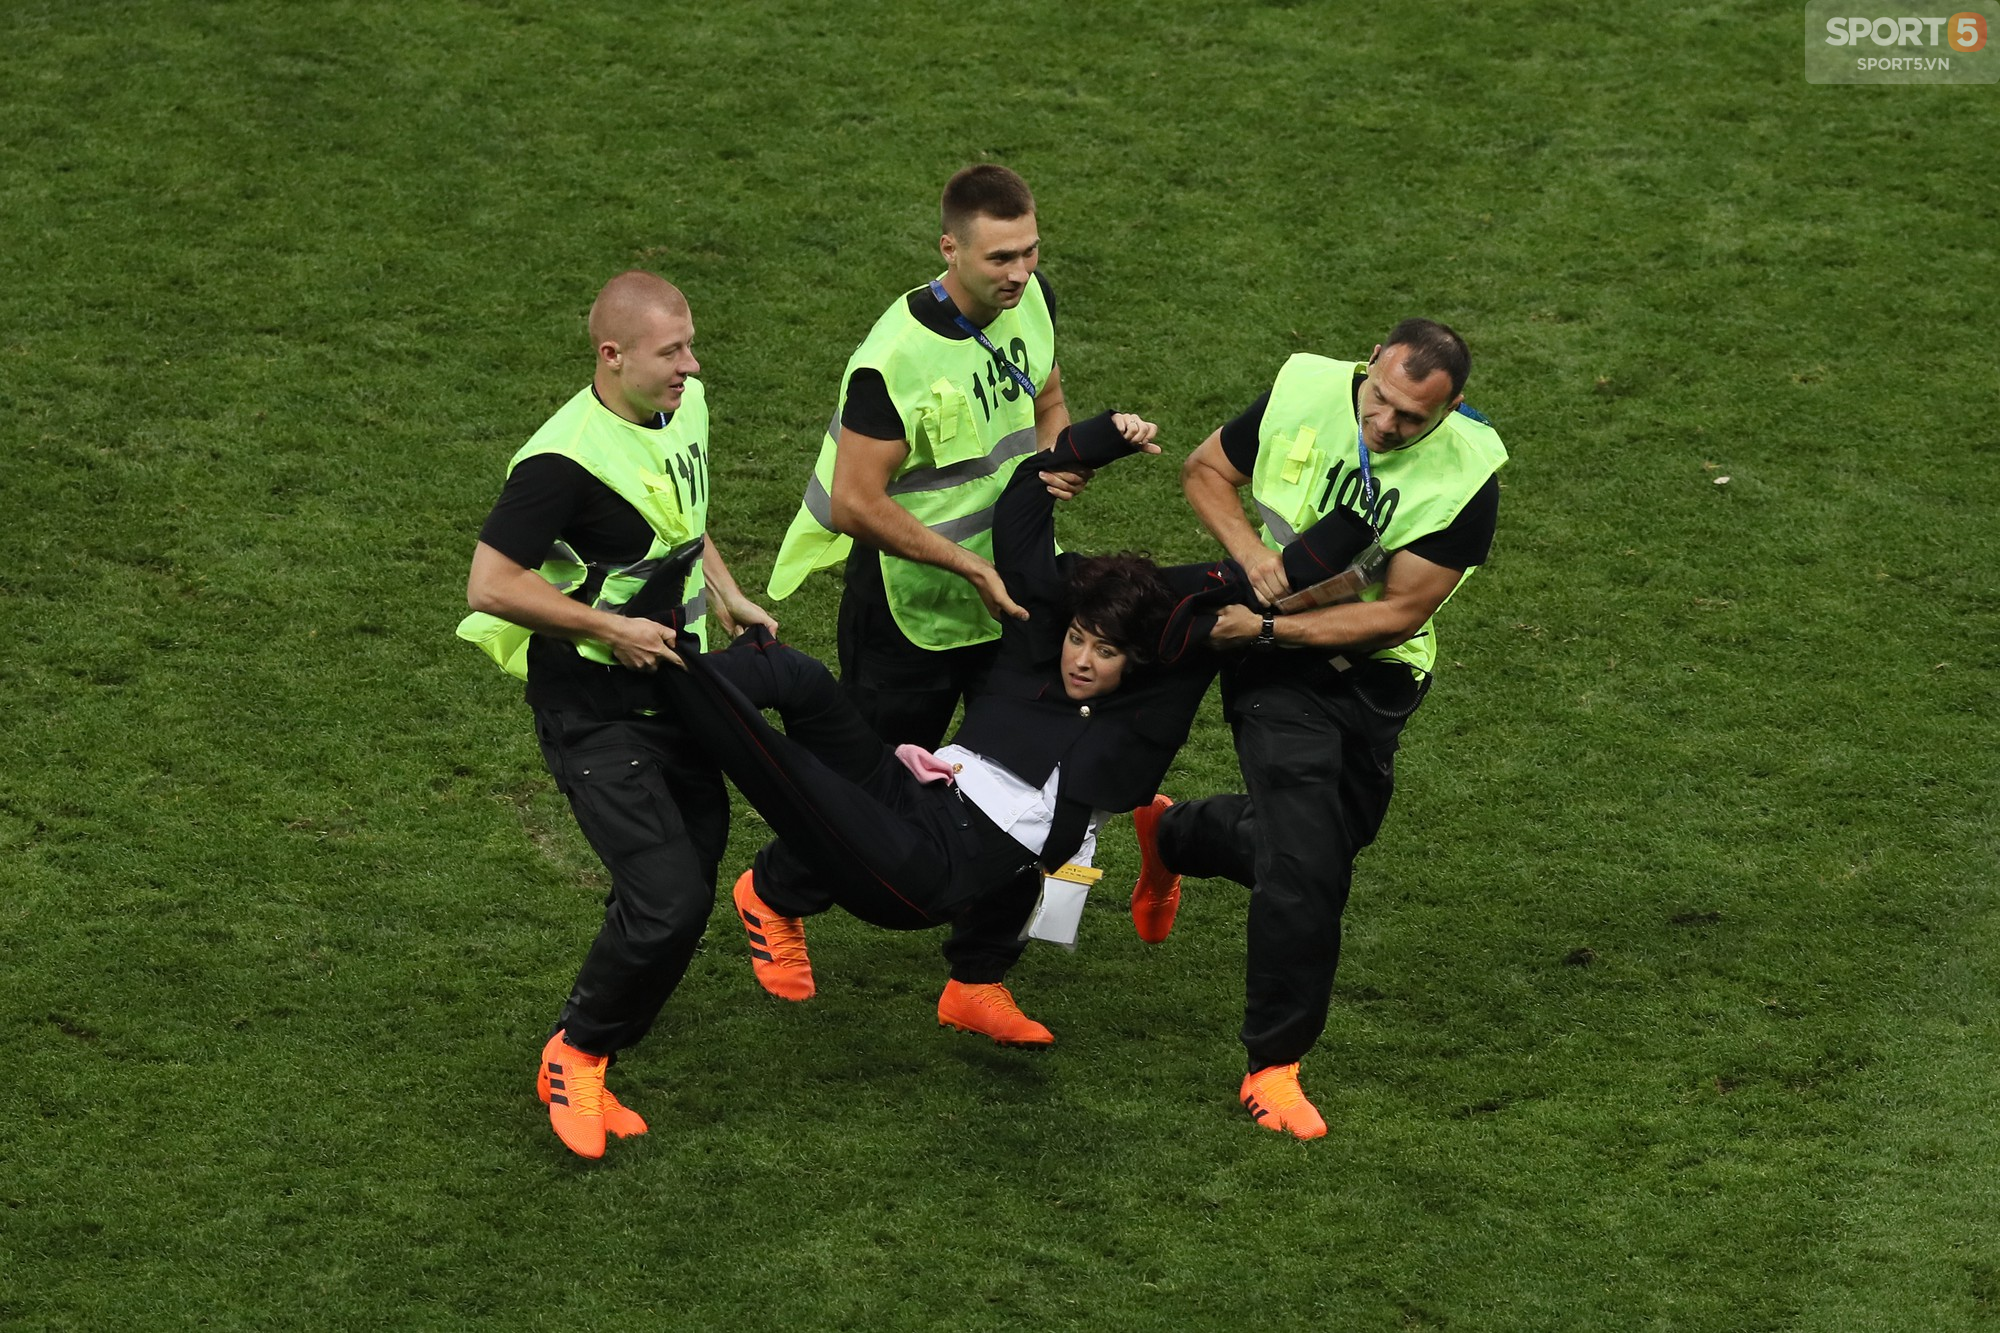 Ban nhạc rock chống đối Tổng thống Putin quấy rối trận chung kết World Cup - Ảnh 6.